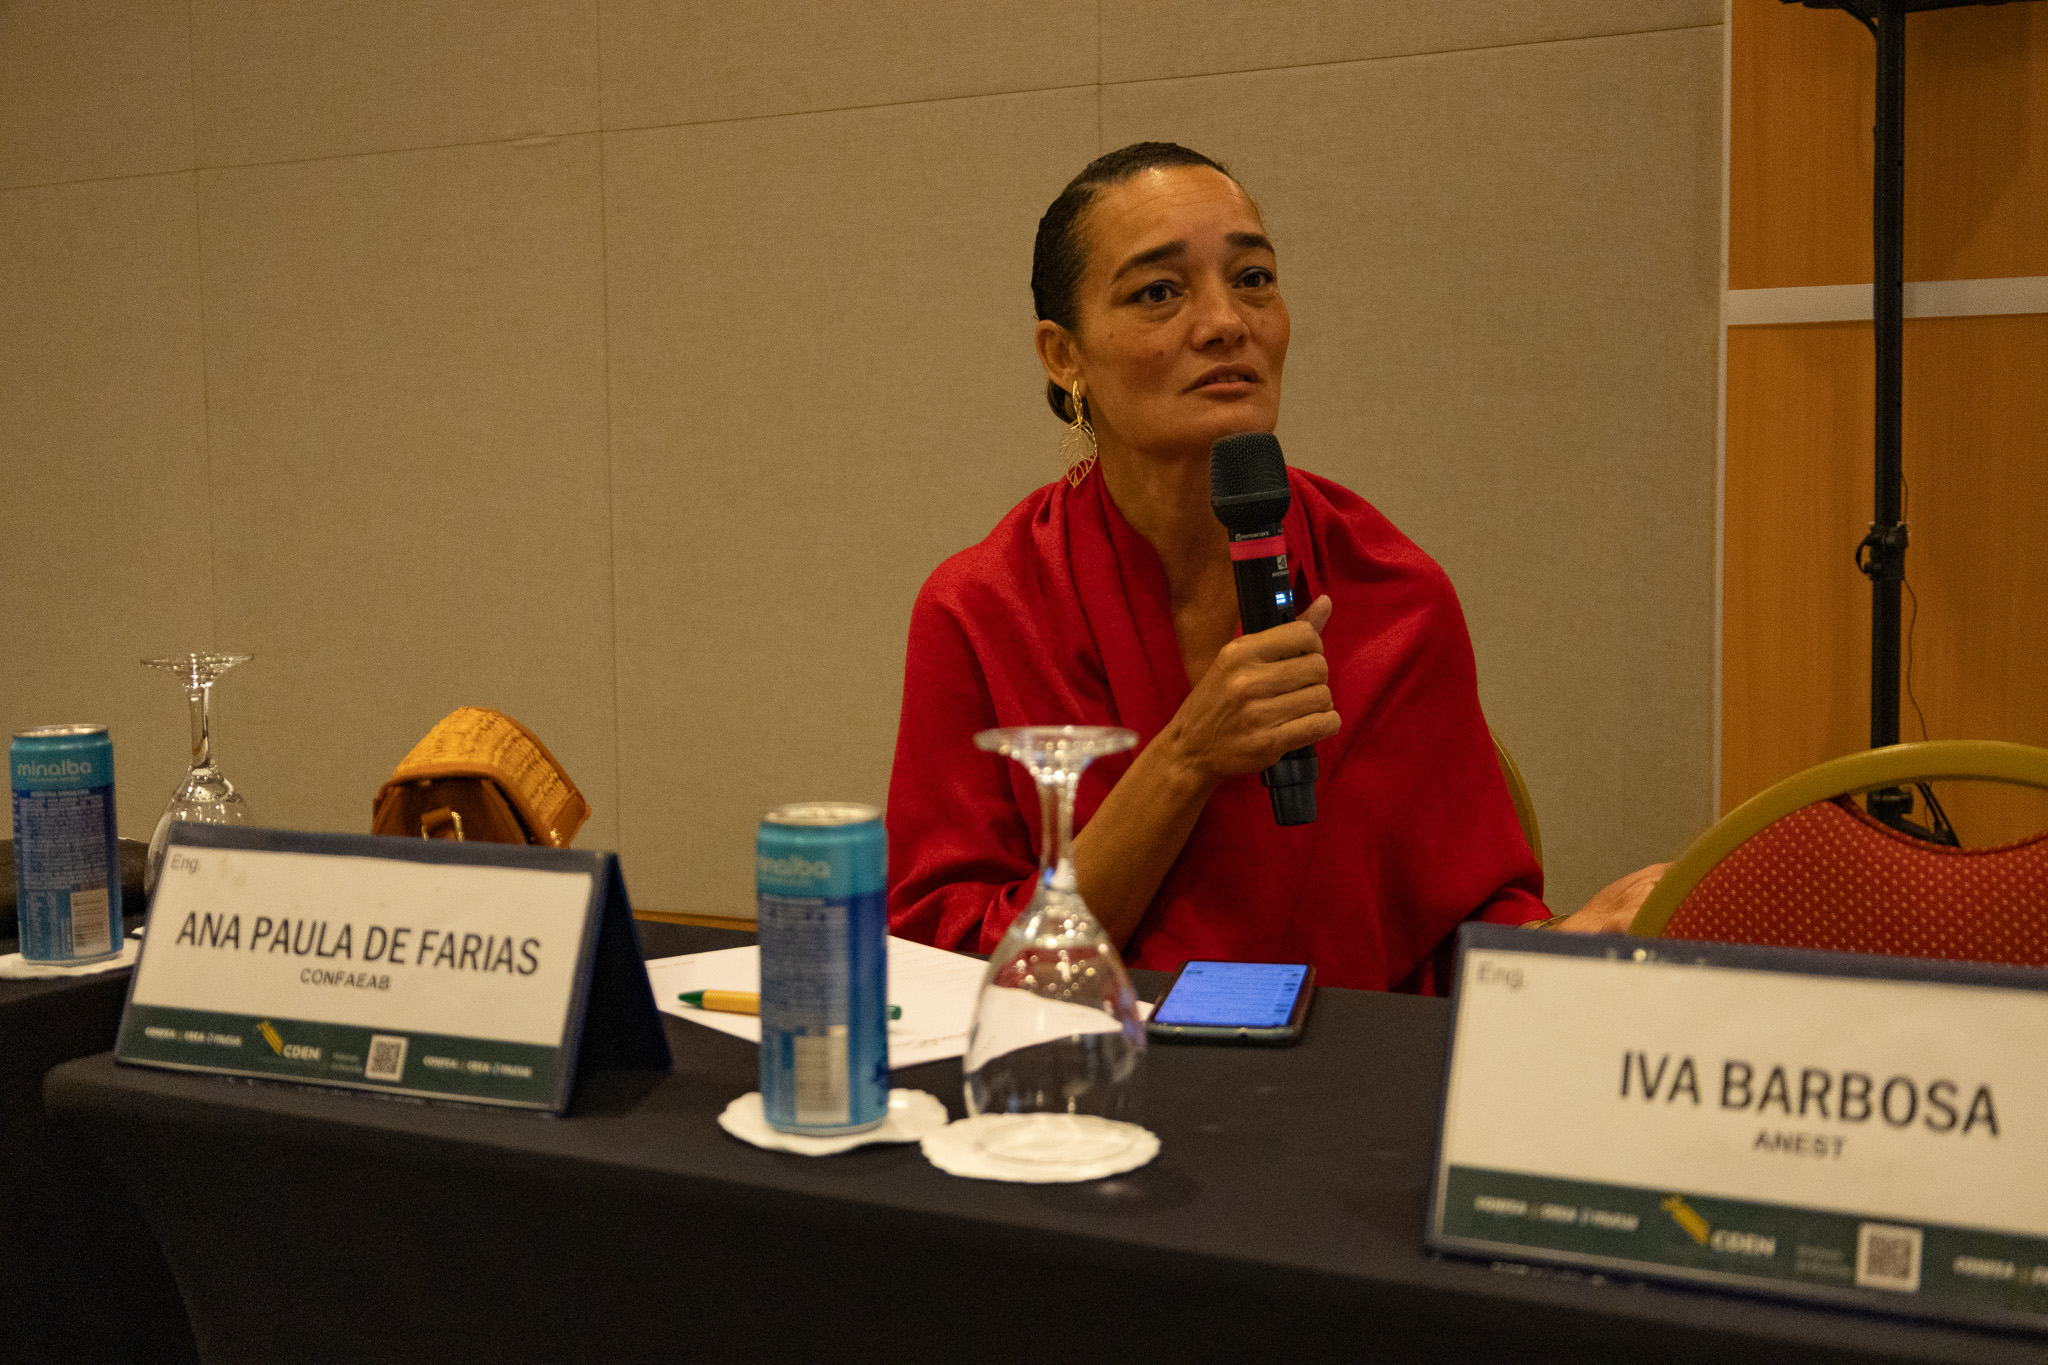 Engenheira Ana Paula de Farias apresentou a proposta da Confaeab para ampliar a participação do Cden junto à Comissão Temática de Harmonização Interconselhos (CTHI)